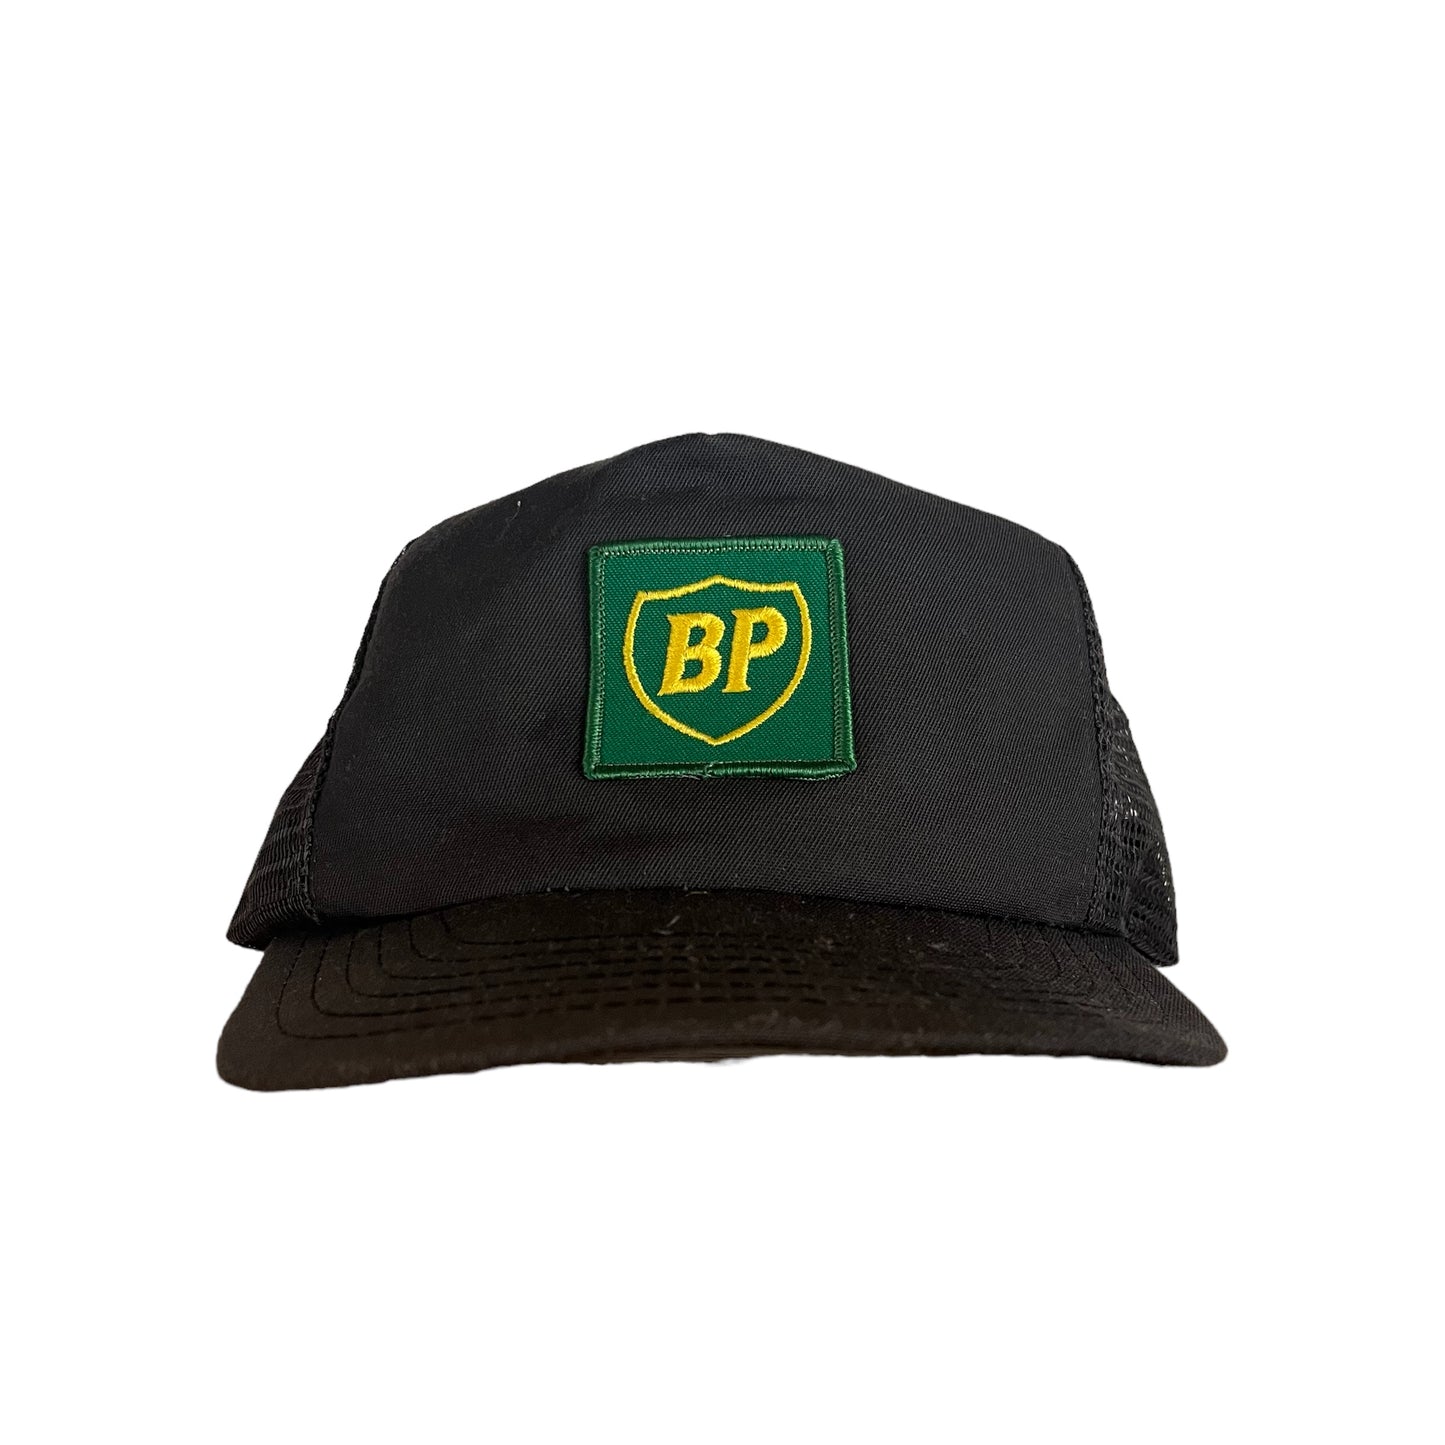 BP Oil VTG Cap